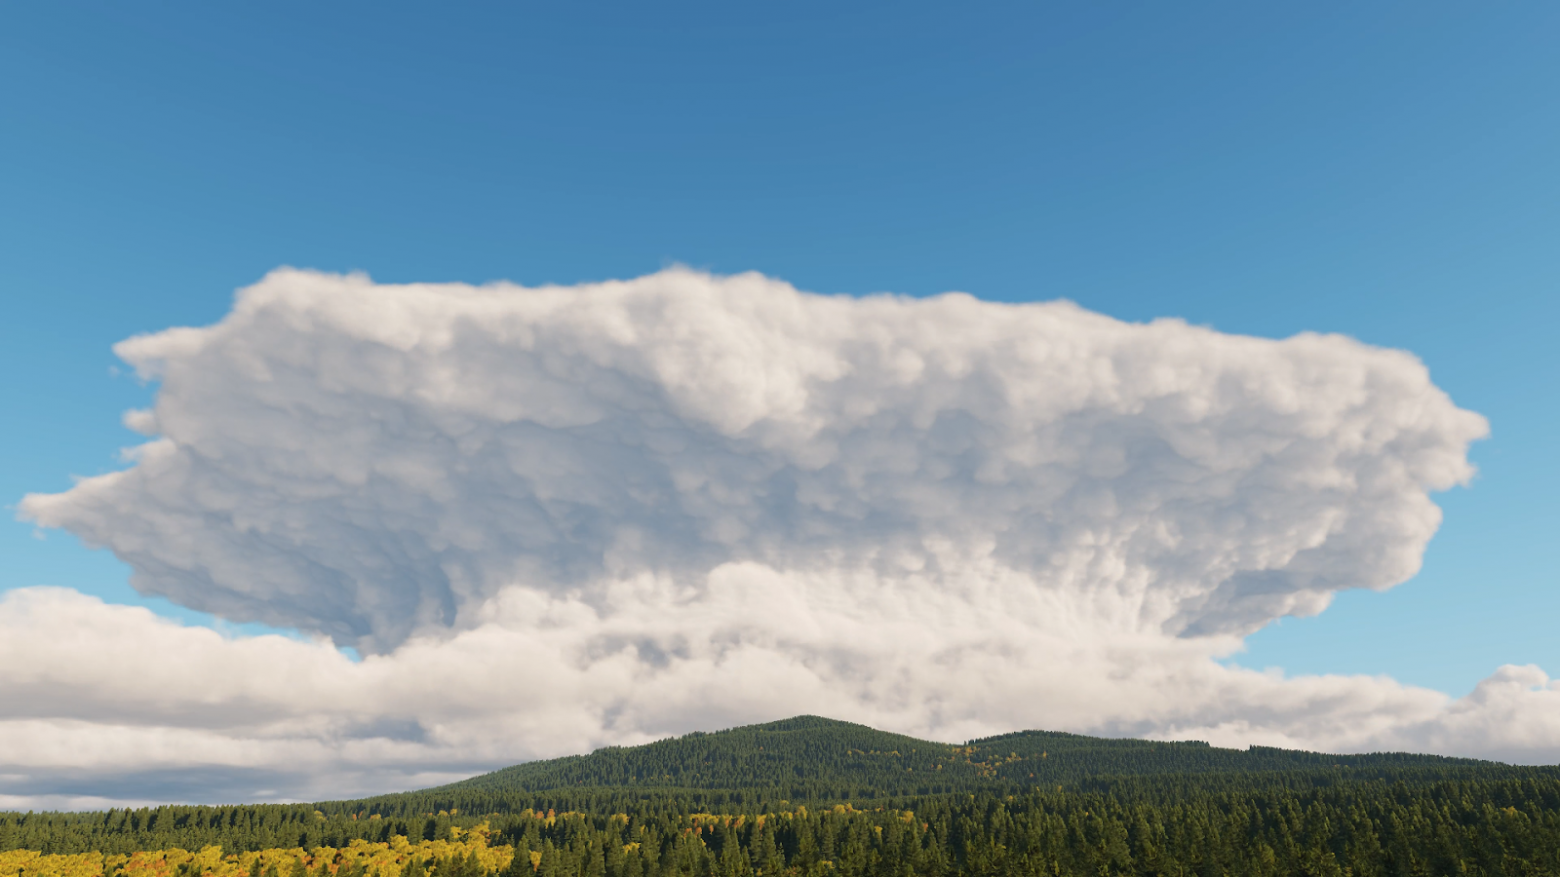 Кучево-дождевые облака (Cumulonimbus) над террейном